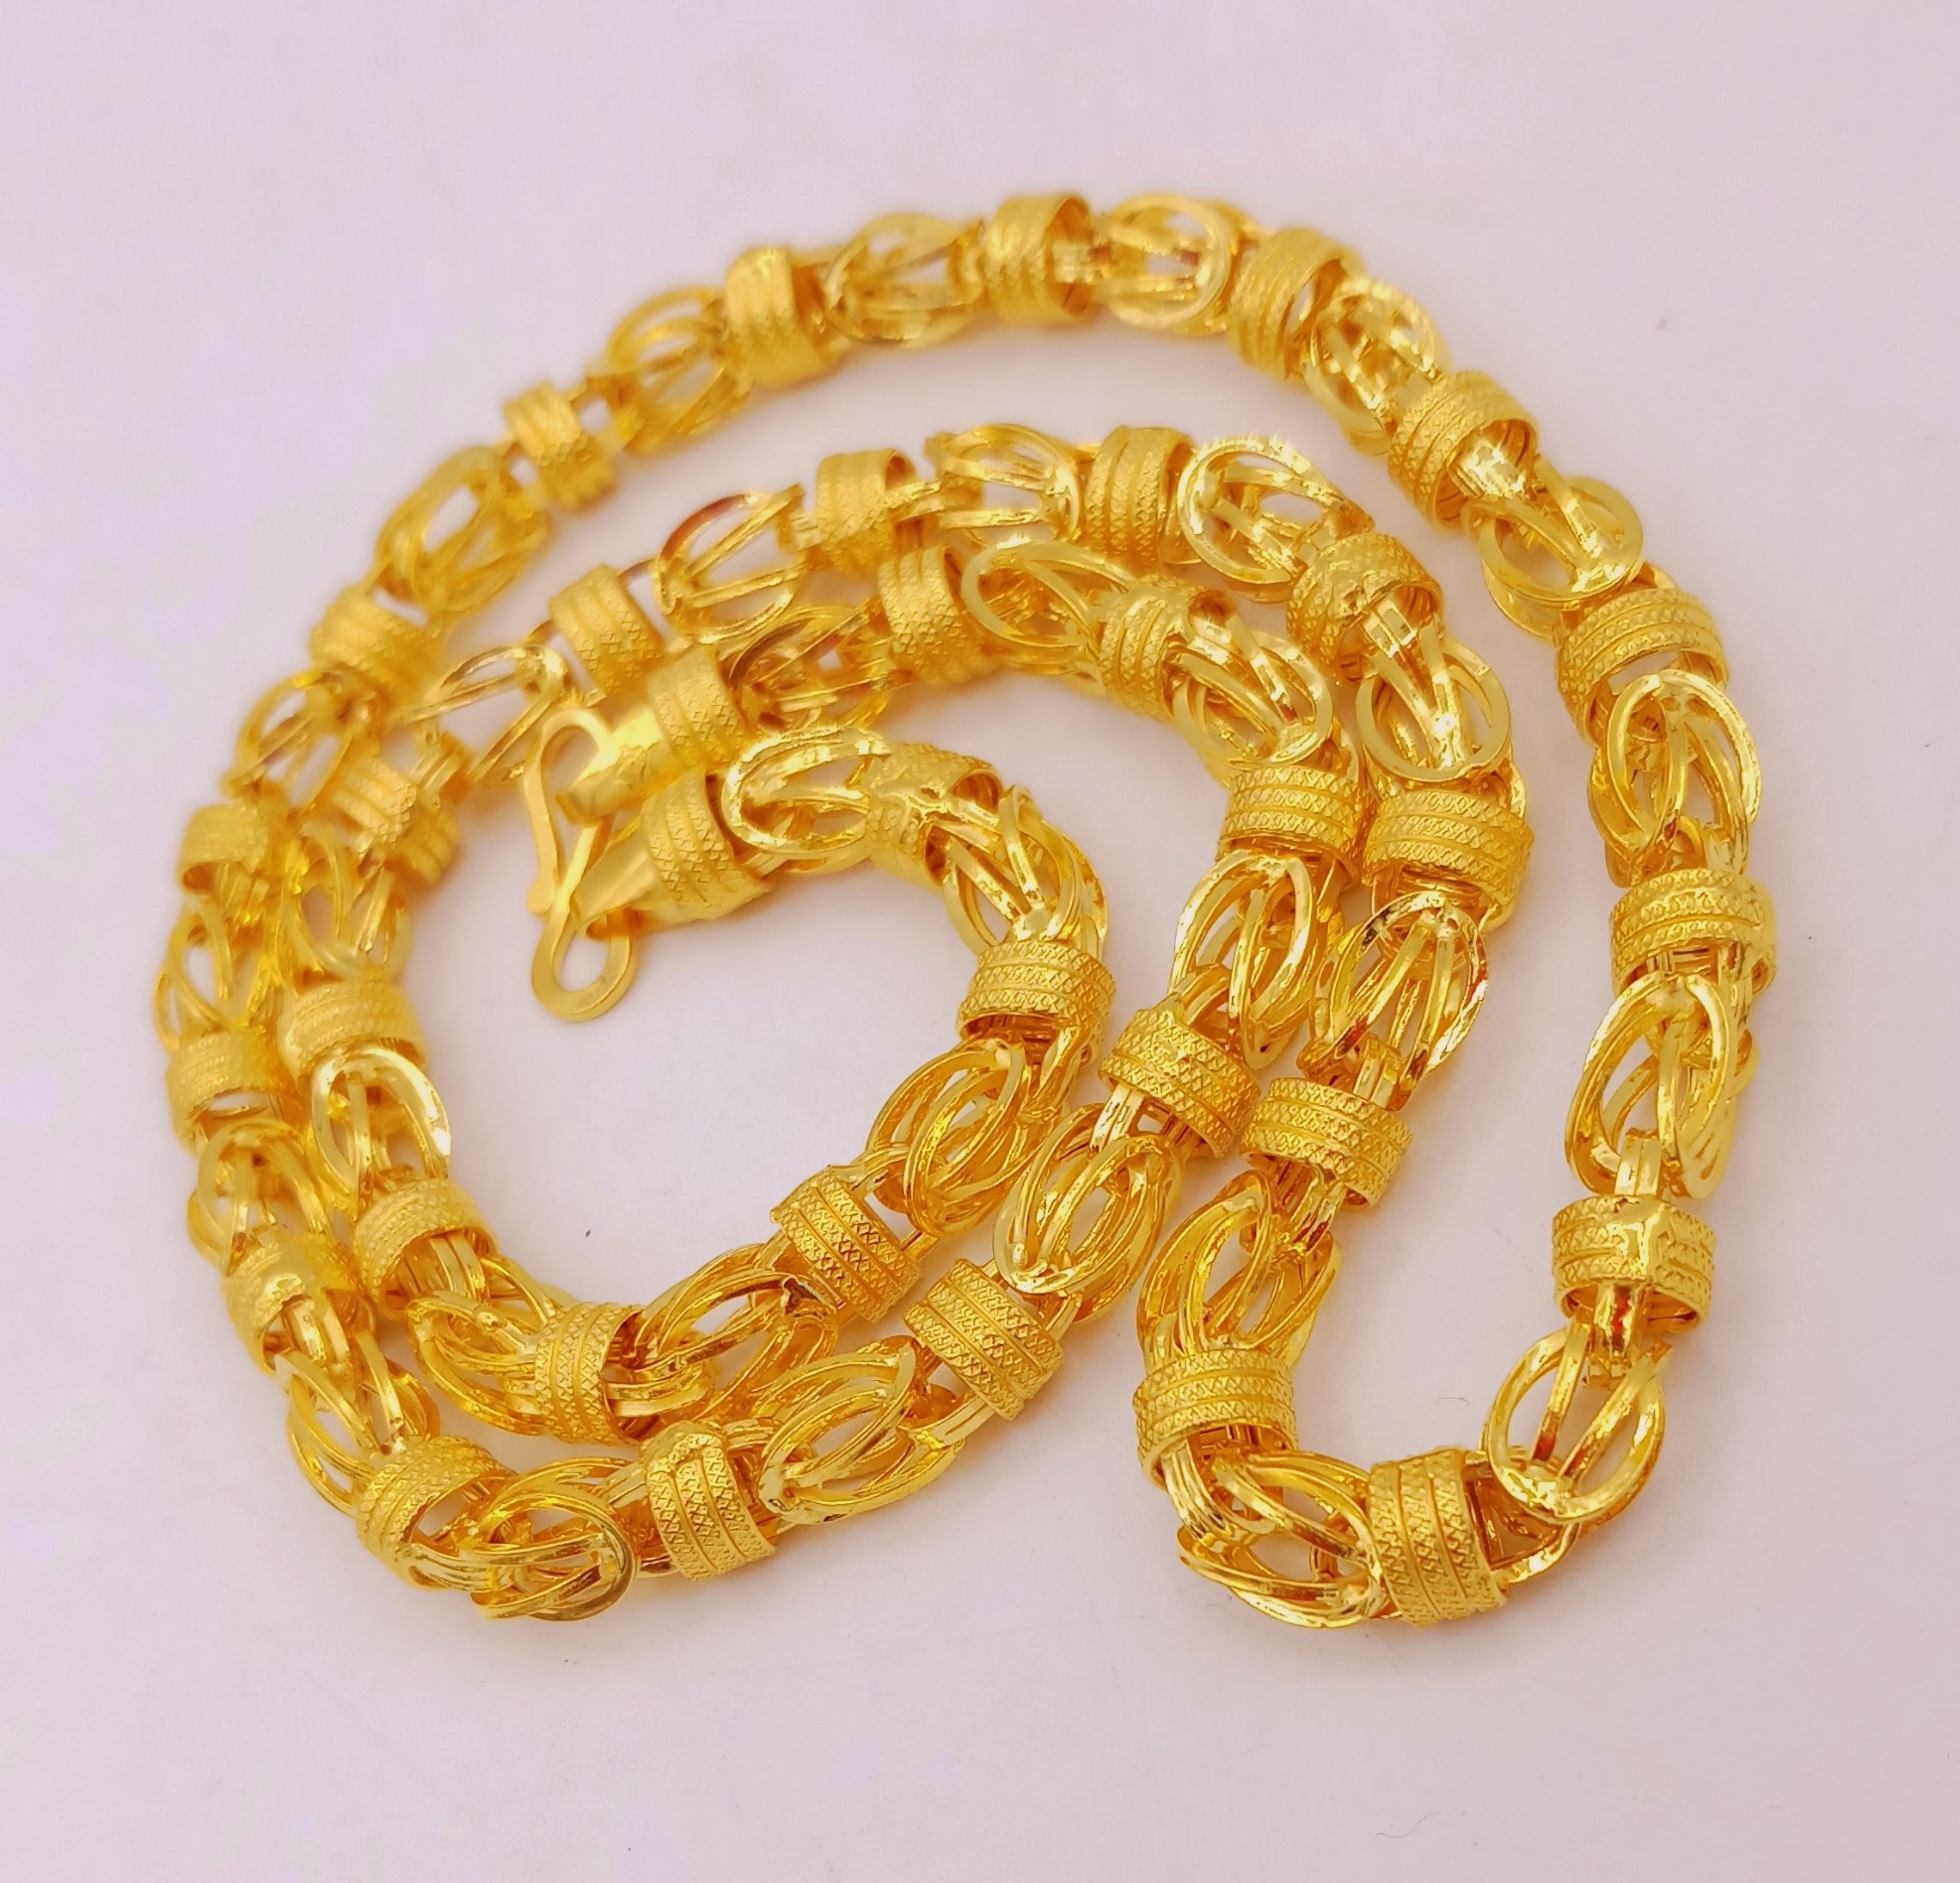 22karat/18karat Yellow Gold Handmade Amazing Stylish Byzantine - Etsy